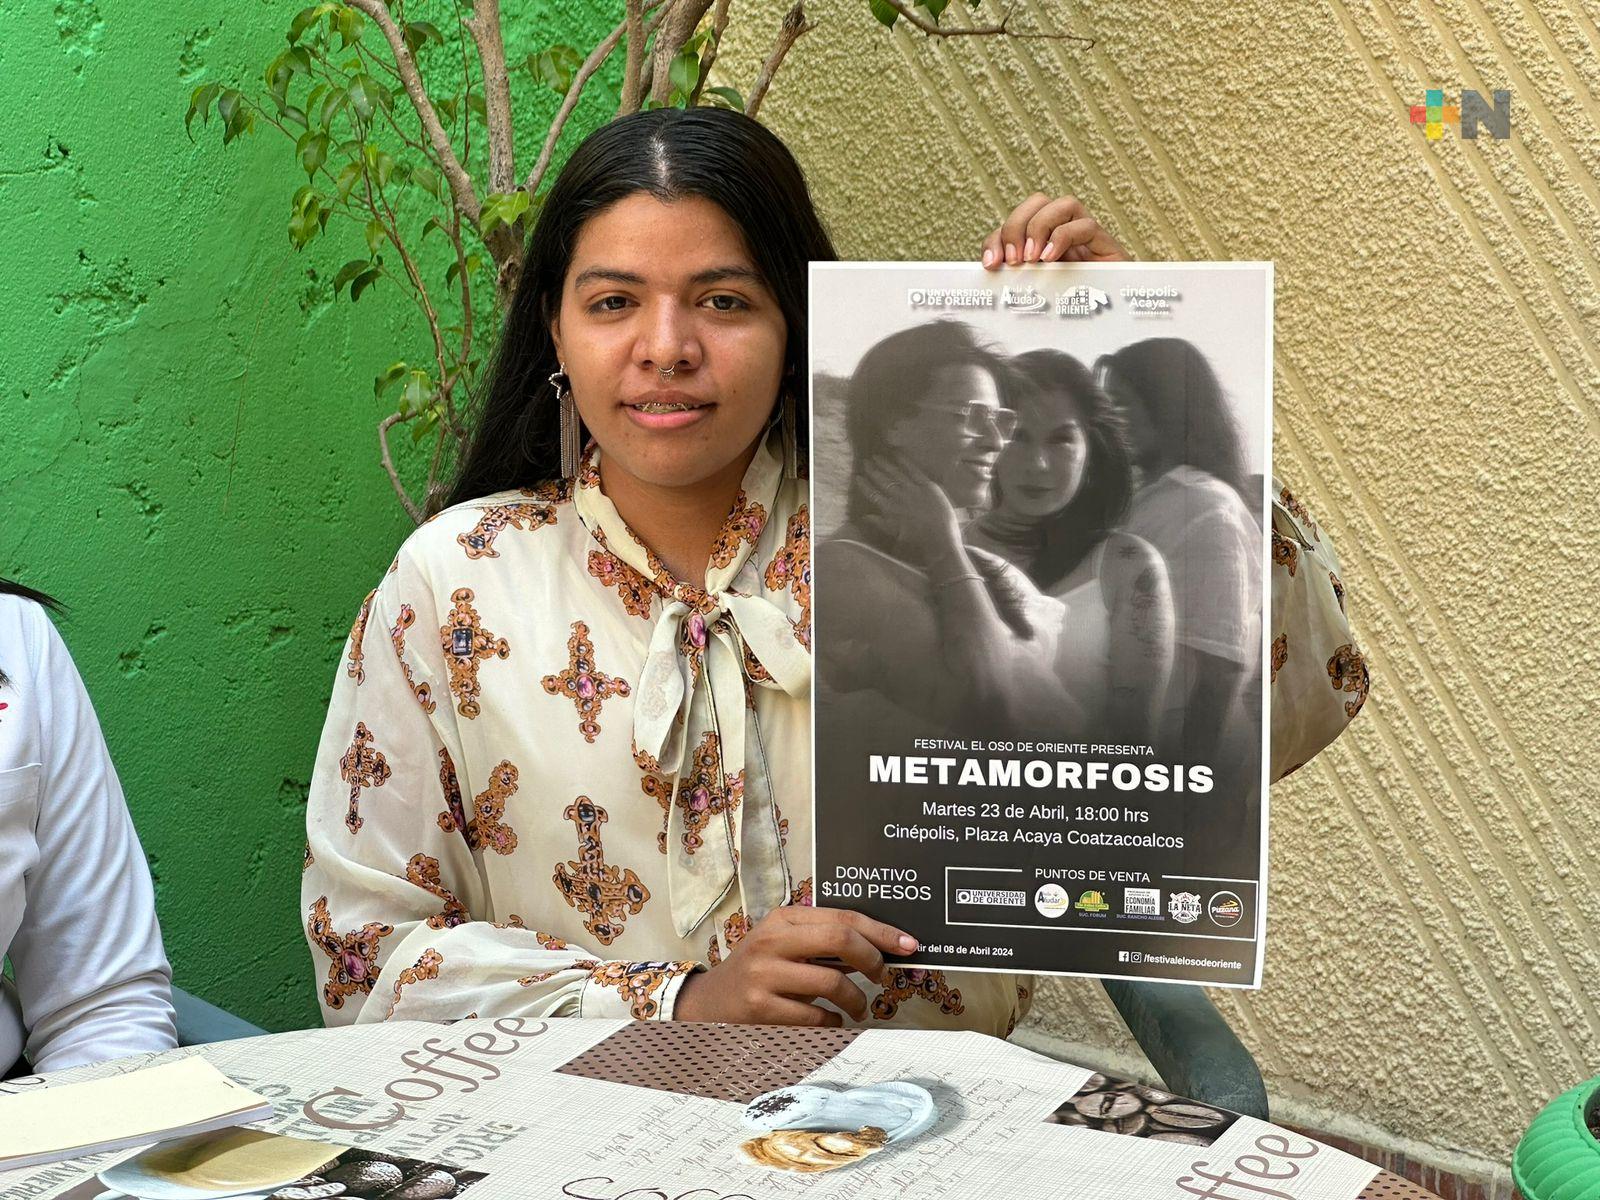 Documental “Metamorfosis” visibiliza a la comunidad trans en el sur de Veracruz